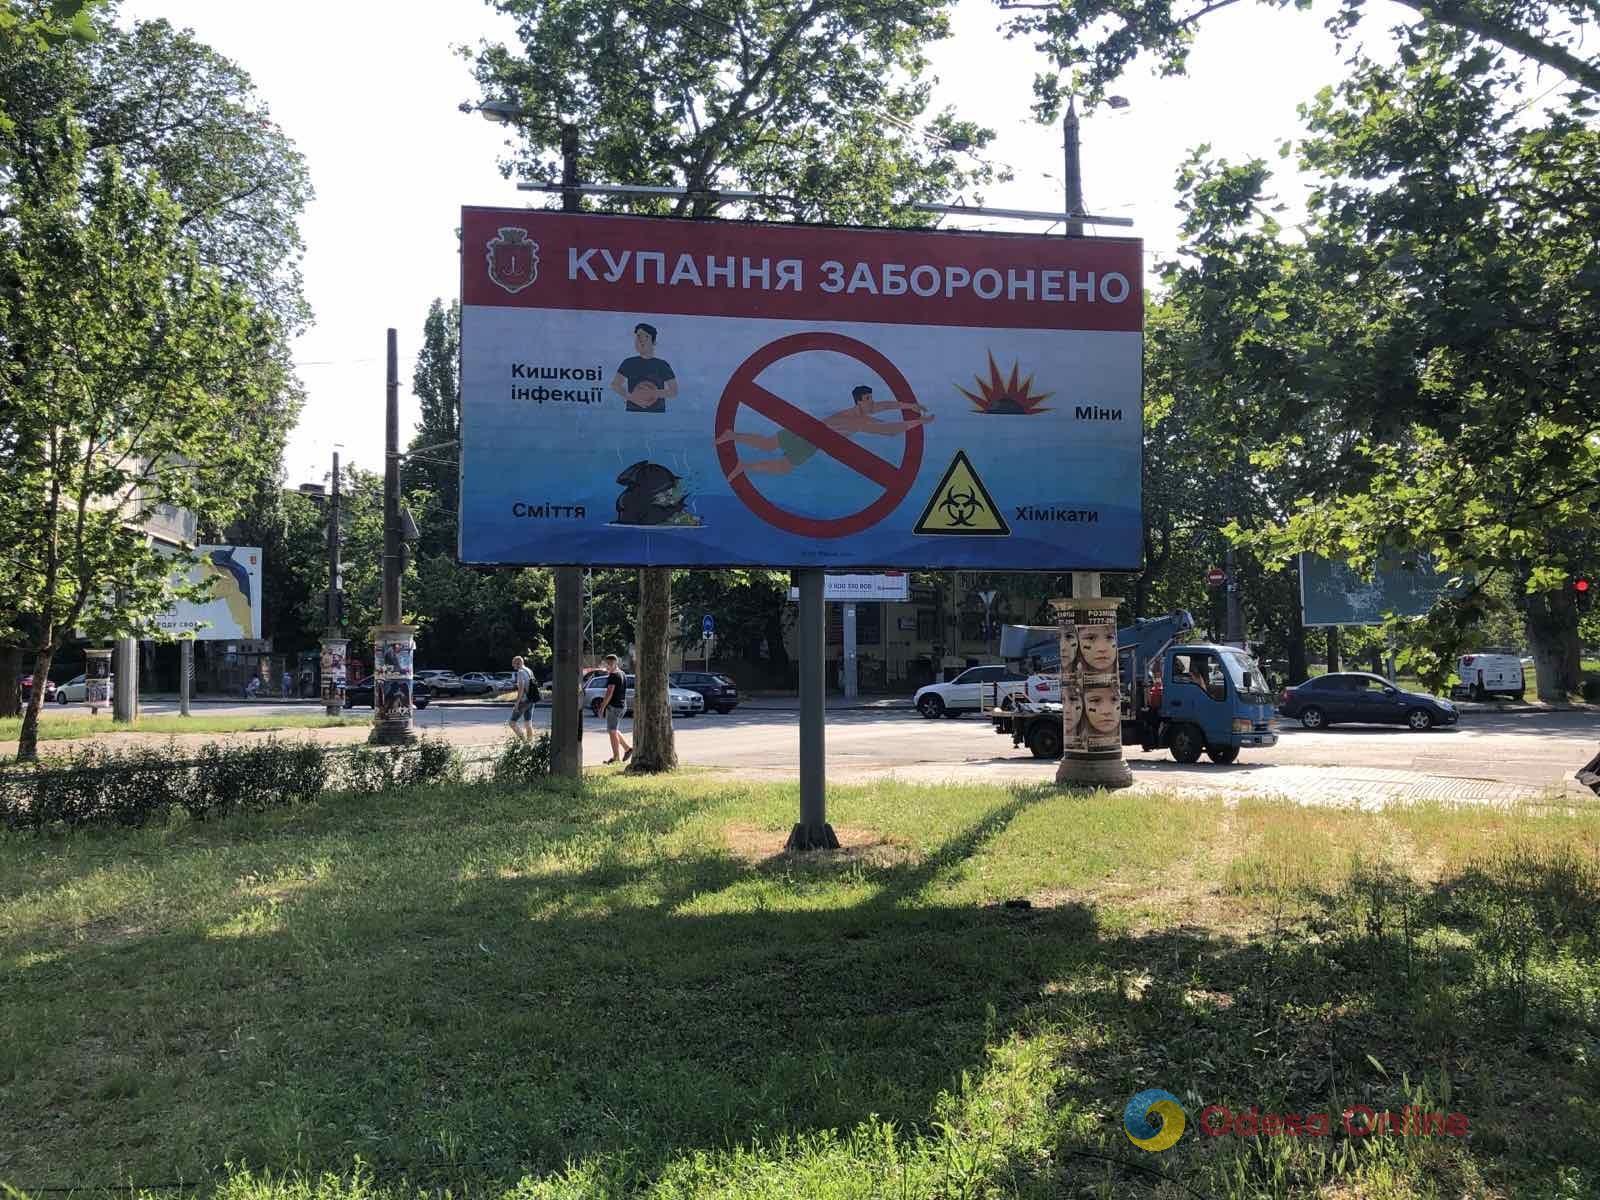 В Одессе разместили социальную рекламу о запрете купания в море